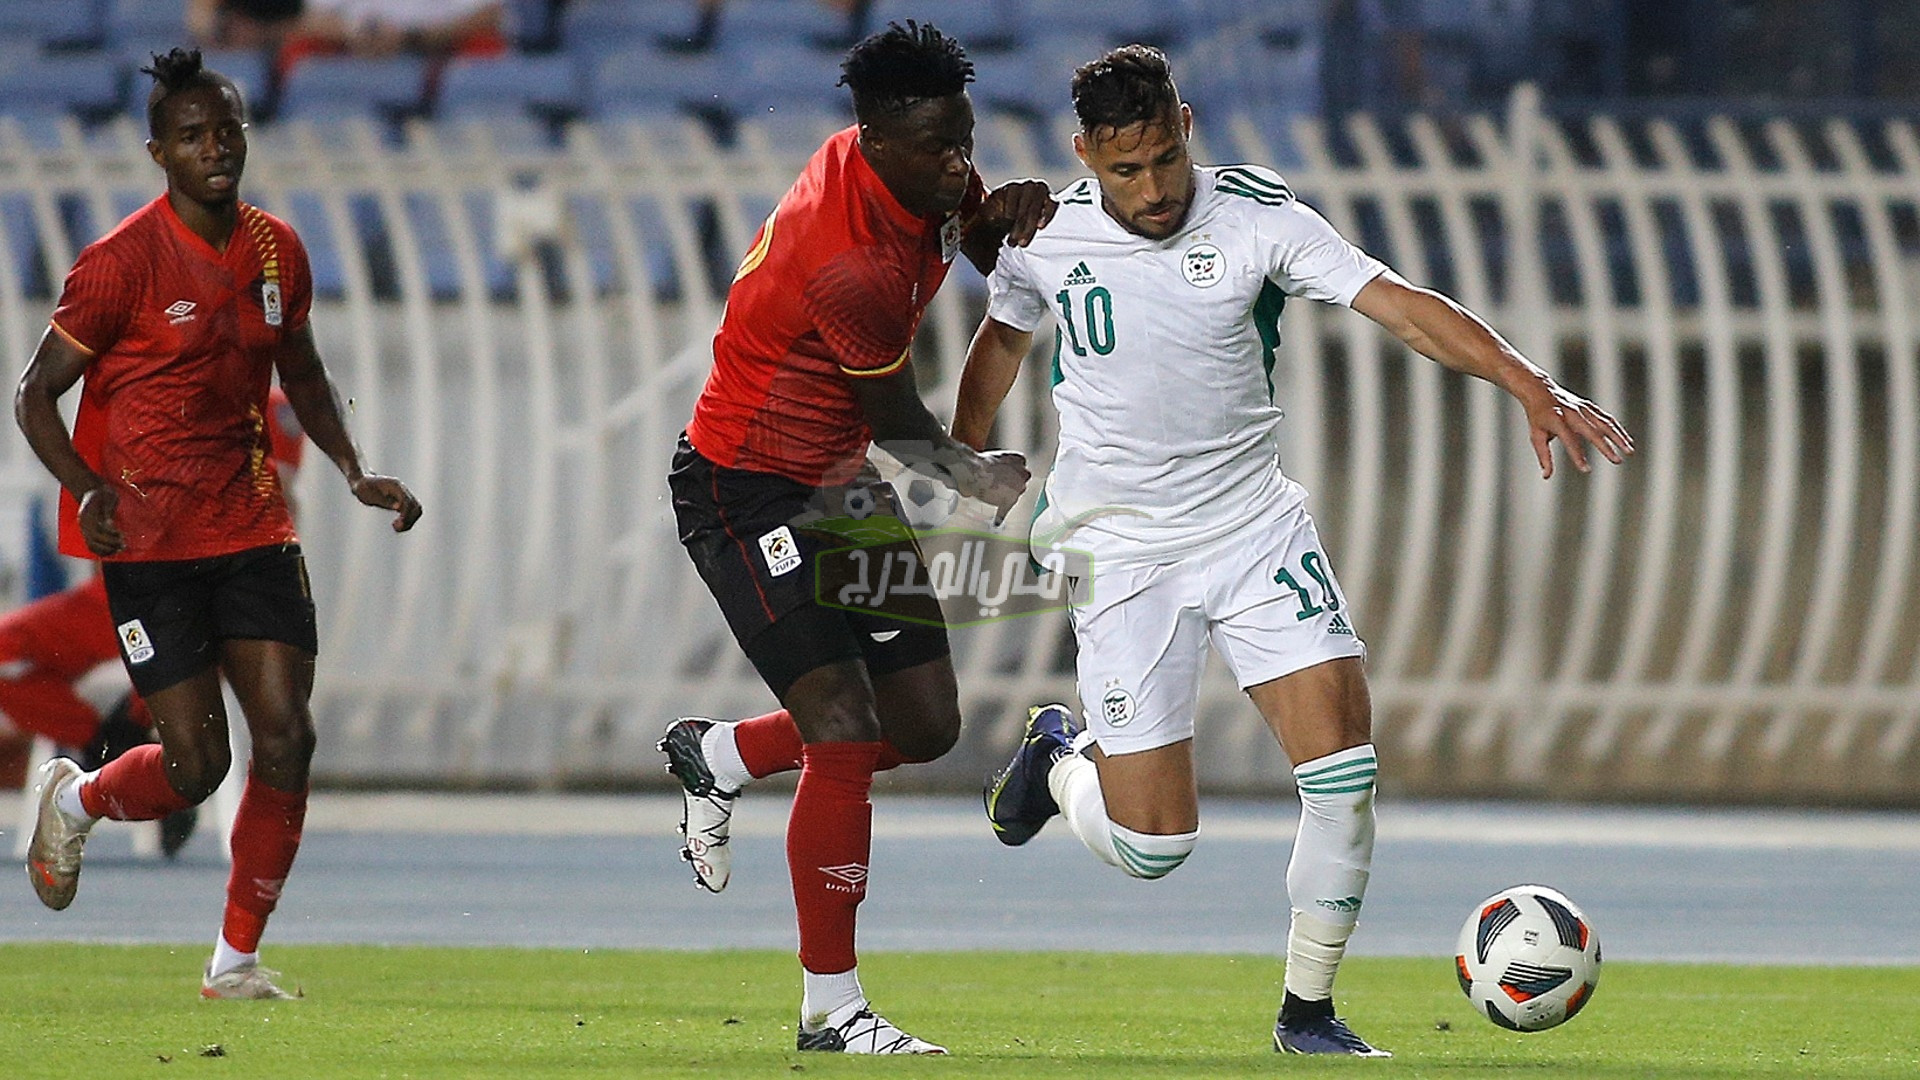 موعد مباراة الجزائر وتنزانيا Algeria vs Tanzania في تصفيات كأس أمم إفريقيا والقنوات الناقلة